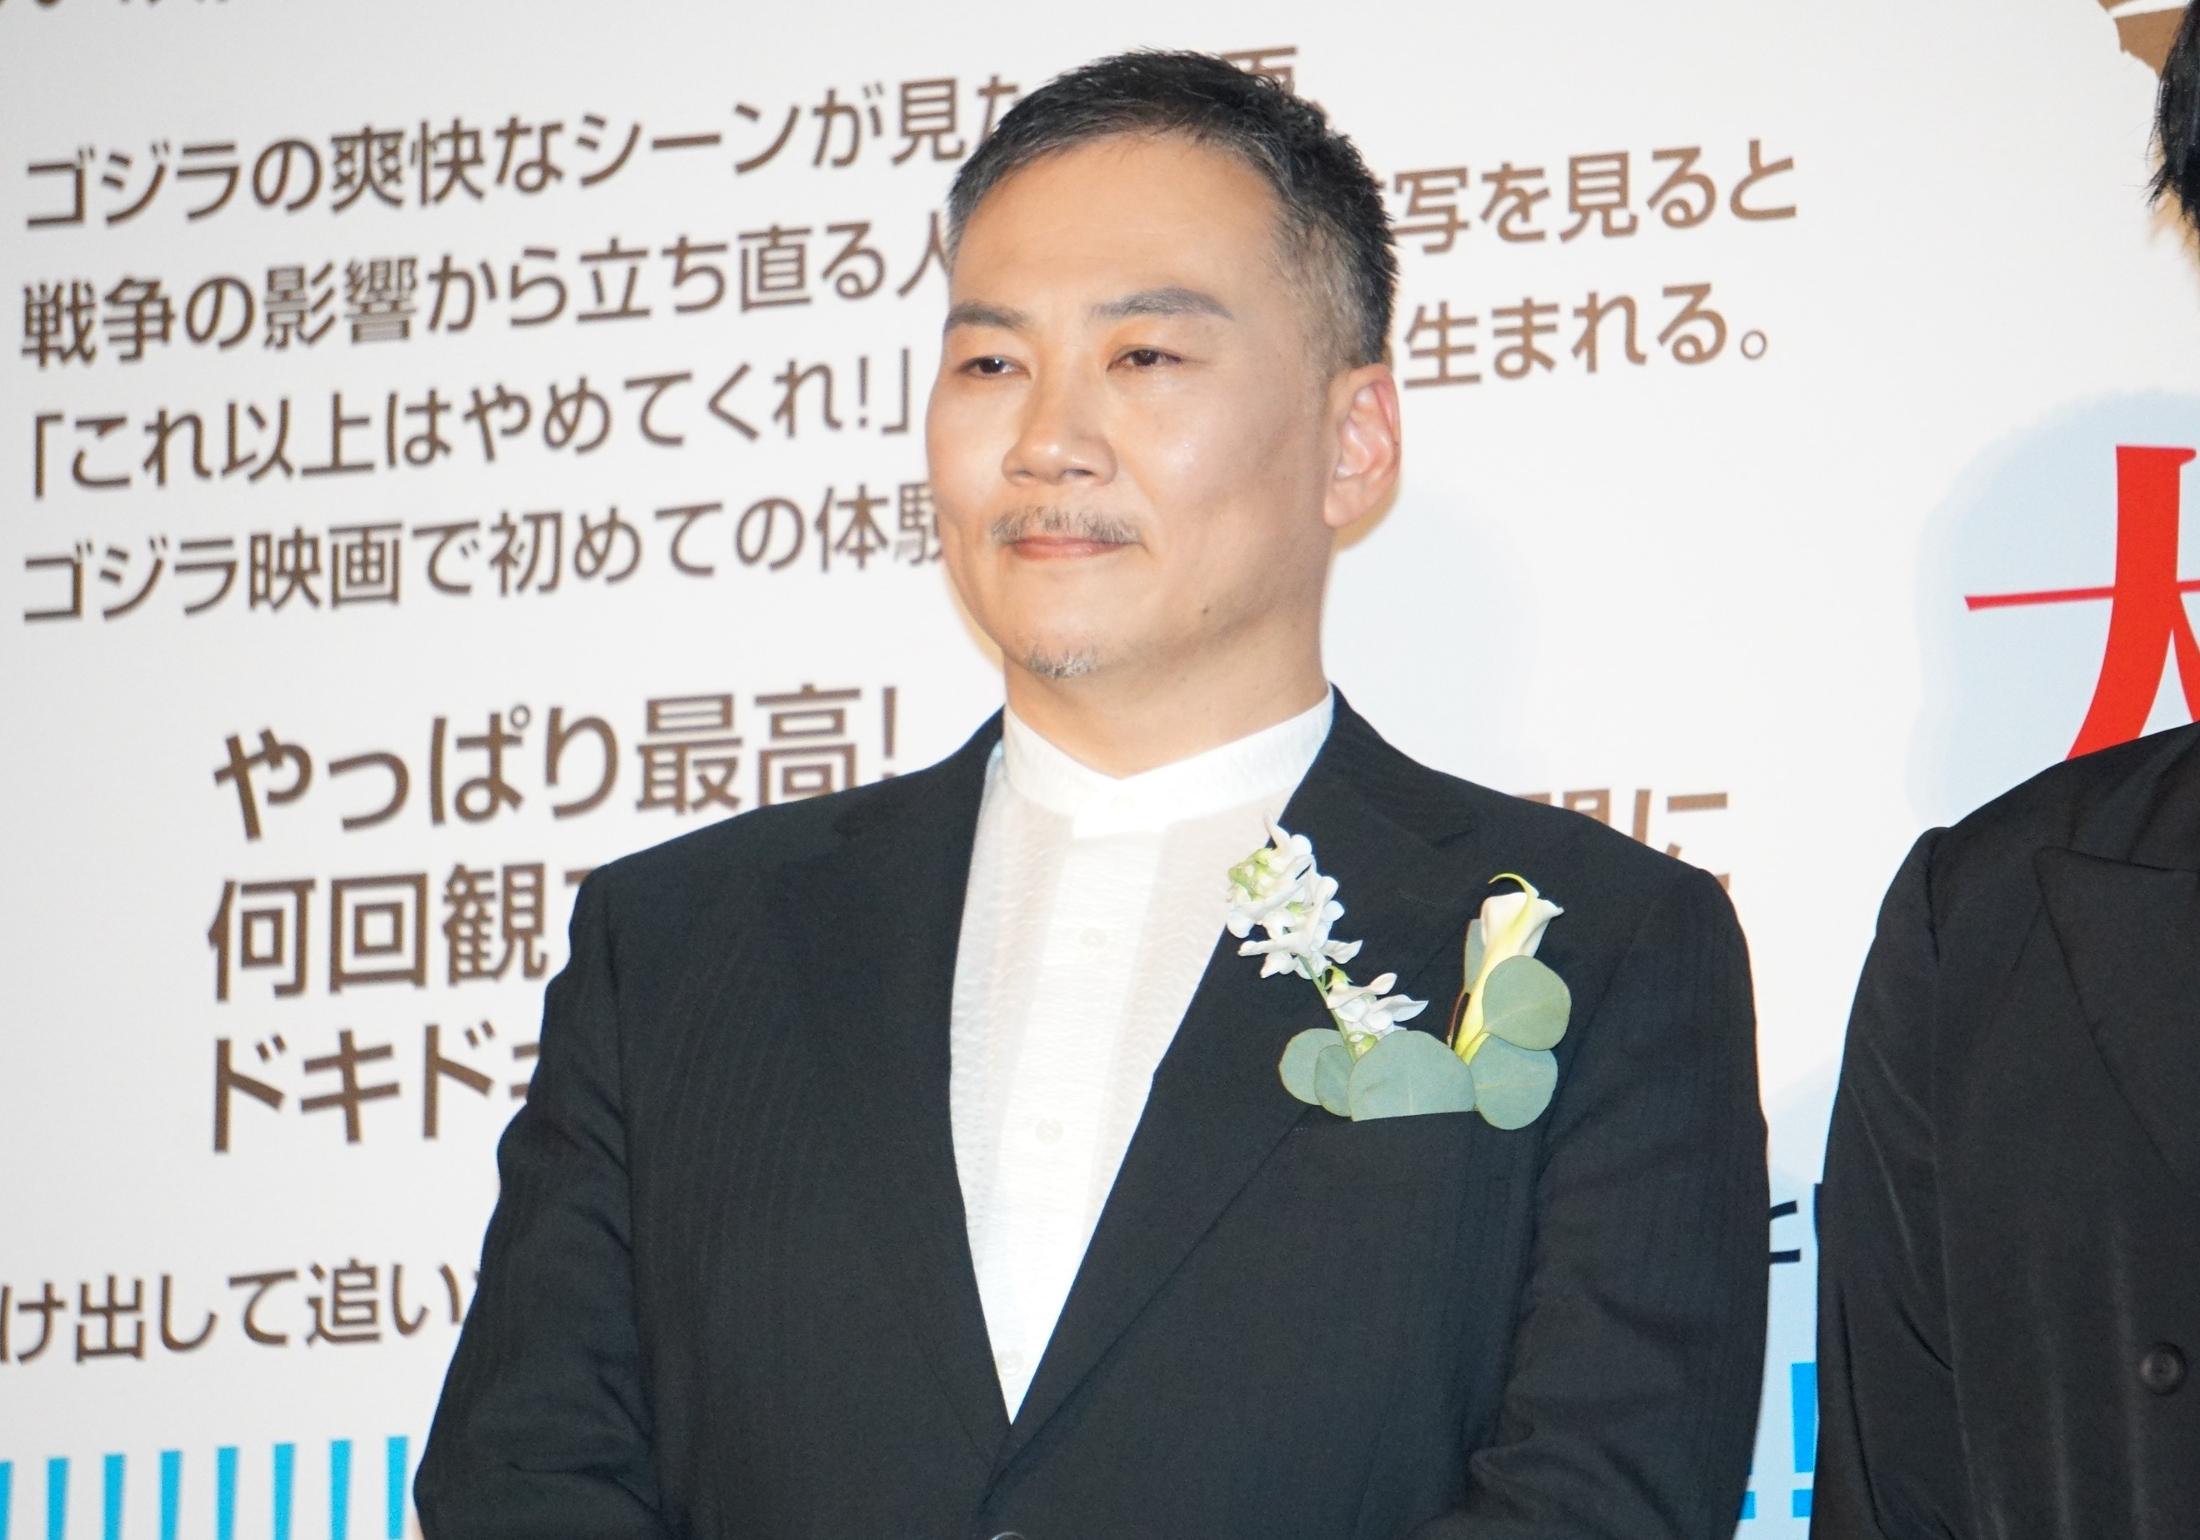 映画館で目撃情報相次ぐ『ゴジラ-1.0』わだつみ作戦指揮官役俳優「よく日比谷のゴジラ像前にいます」(TOKYO HEADLINE WEB)